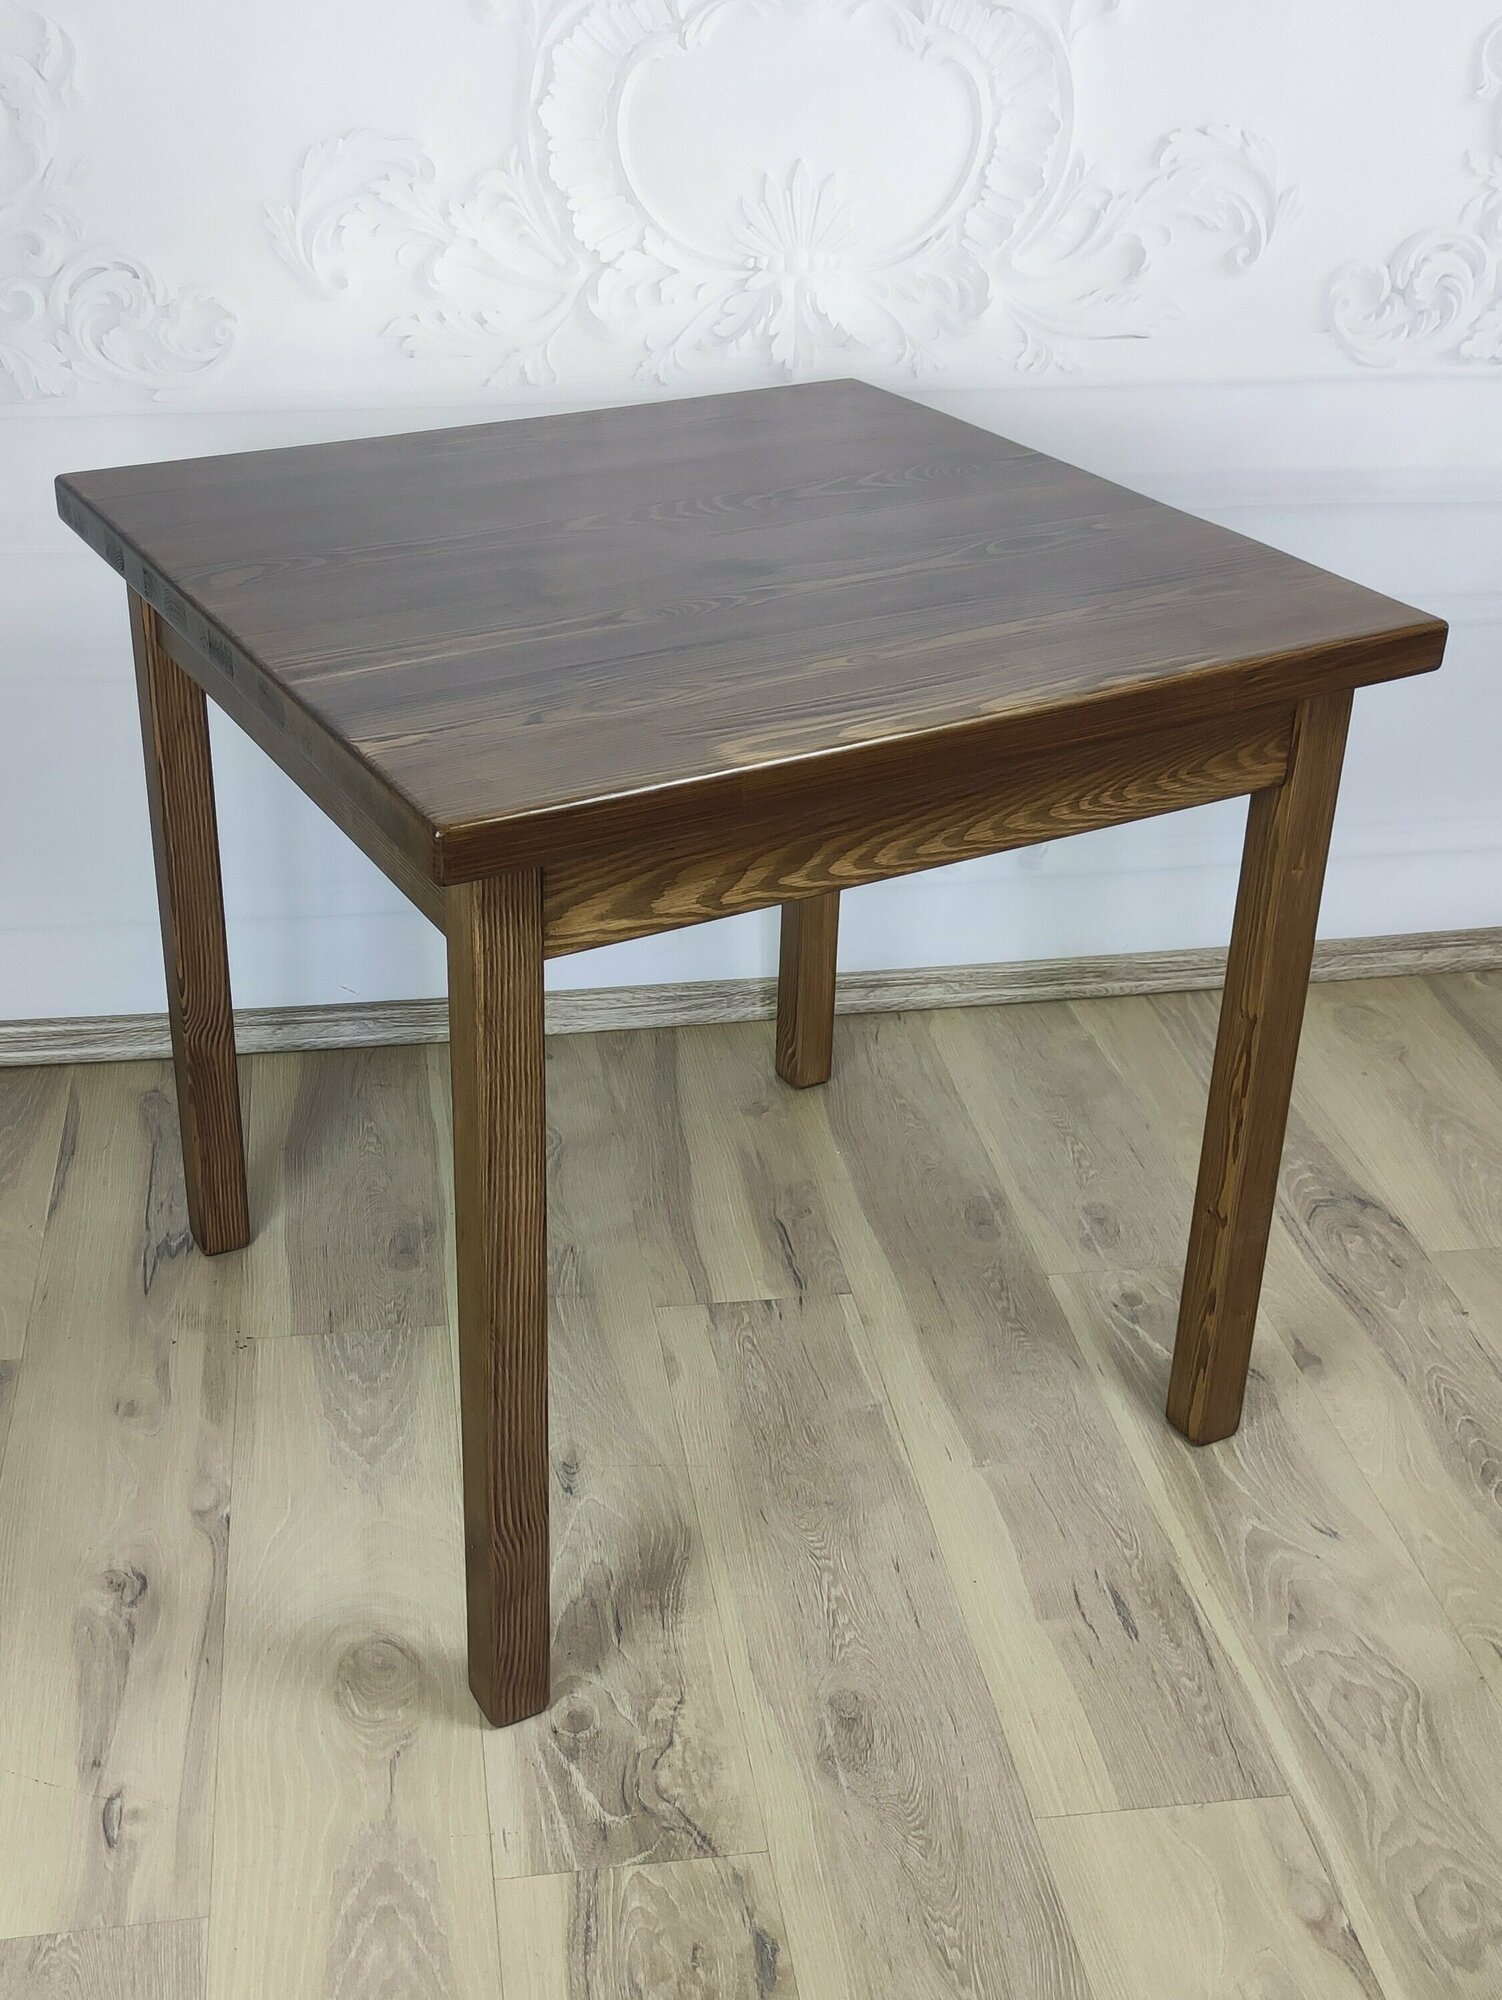 Стол кухонный Классика с квадратной столешницей 40 мм из массива сосны, 70х70х75 см, цвет темный дуб